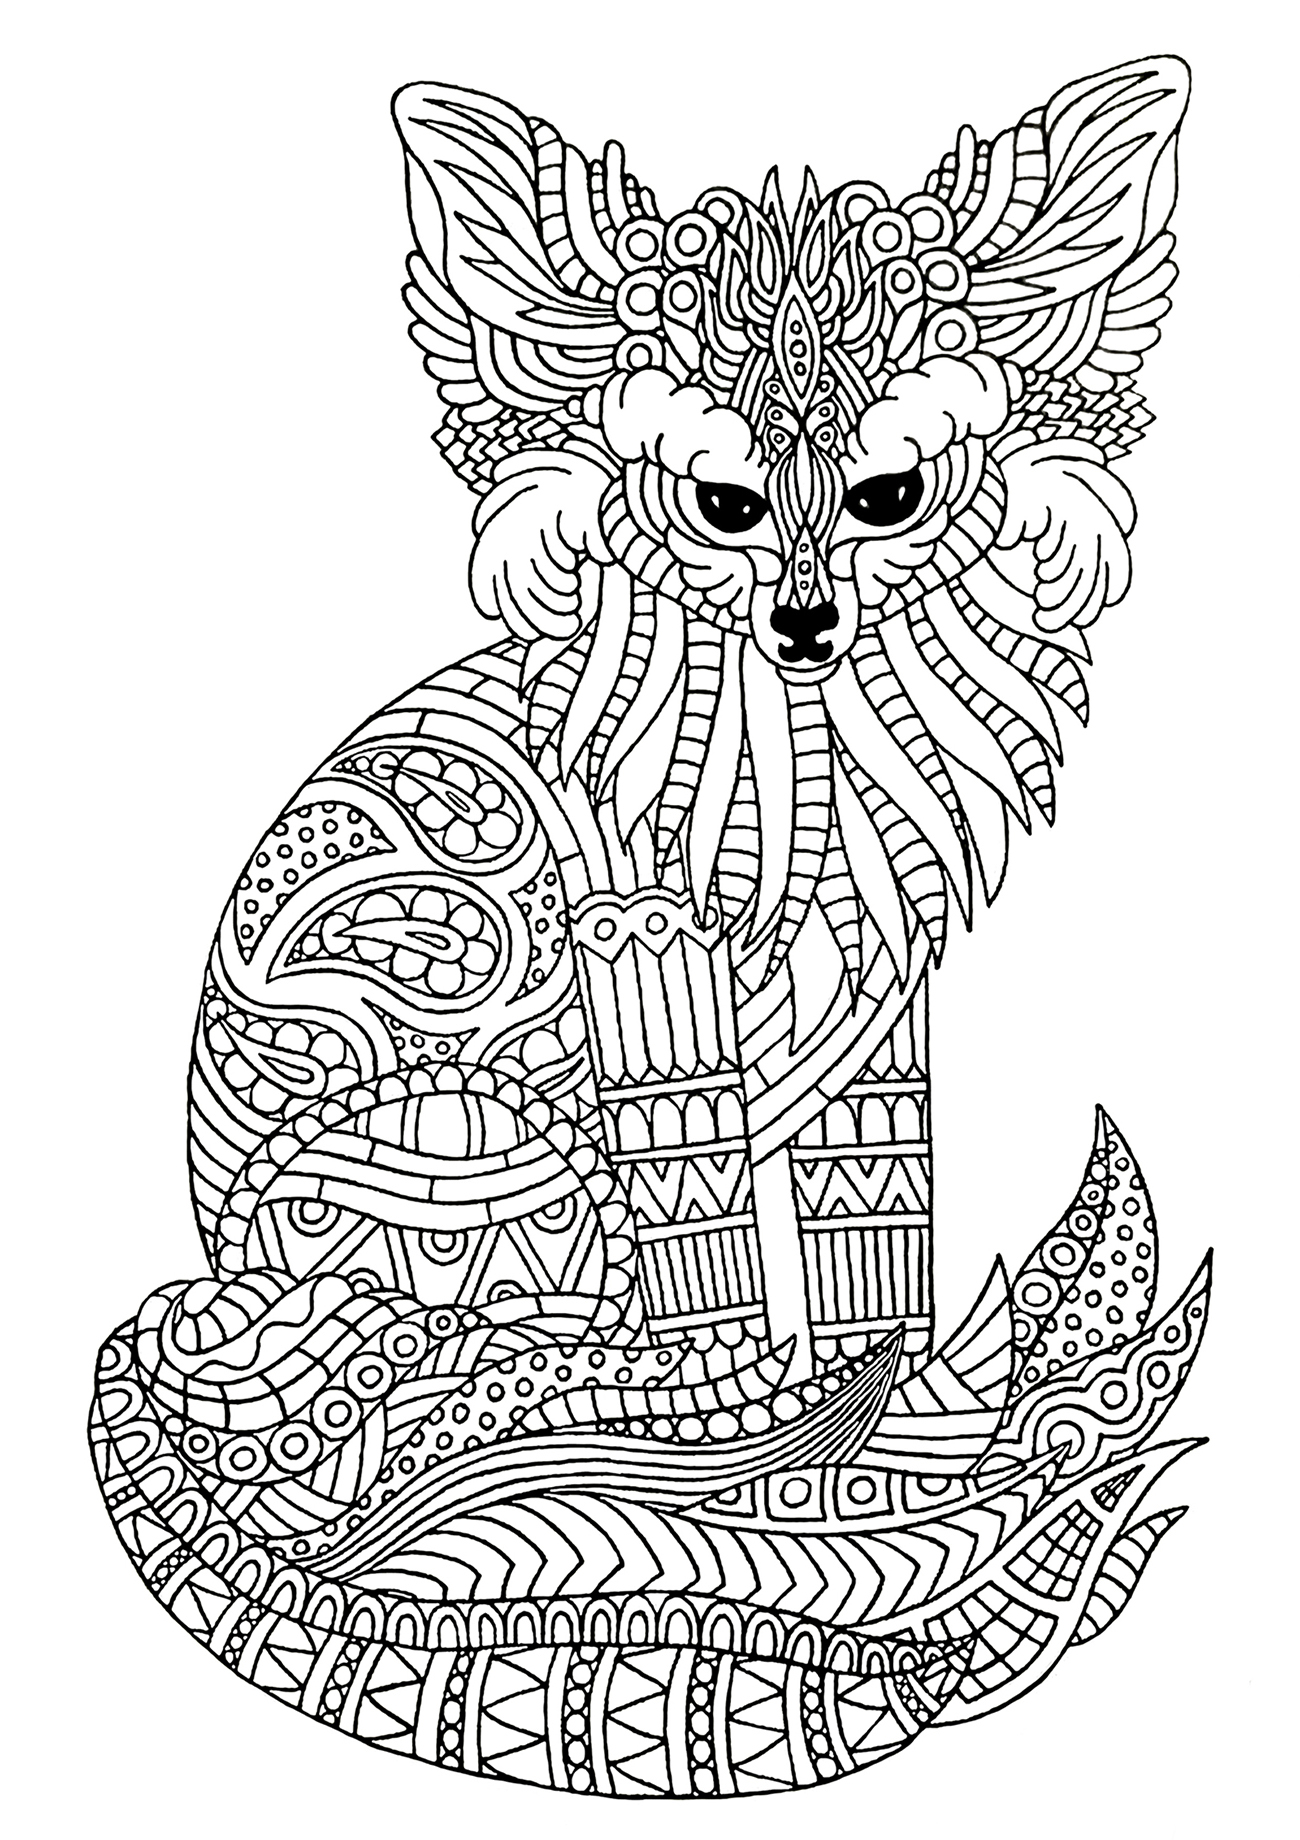 Joli fennec (renard des sables) à colorier, avec motifs complexes